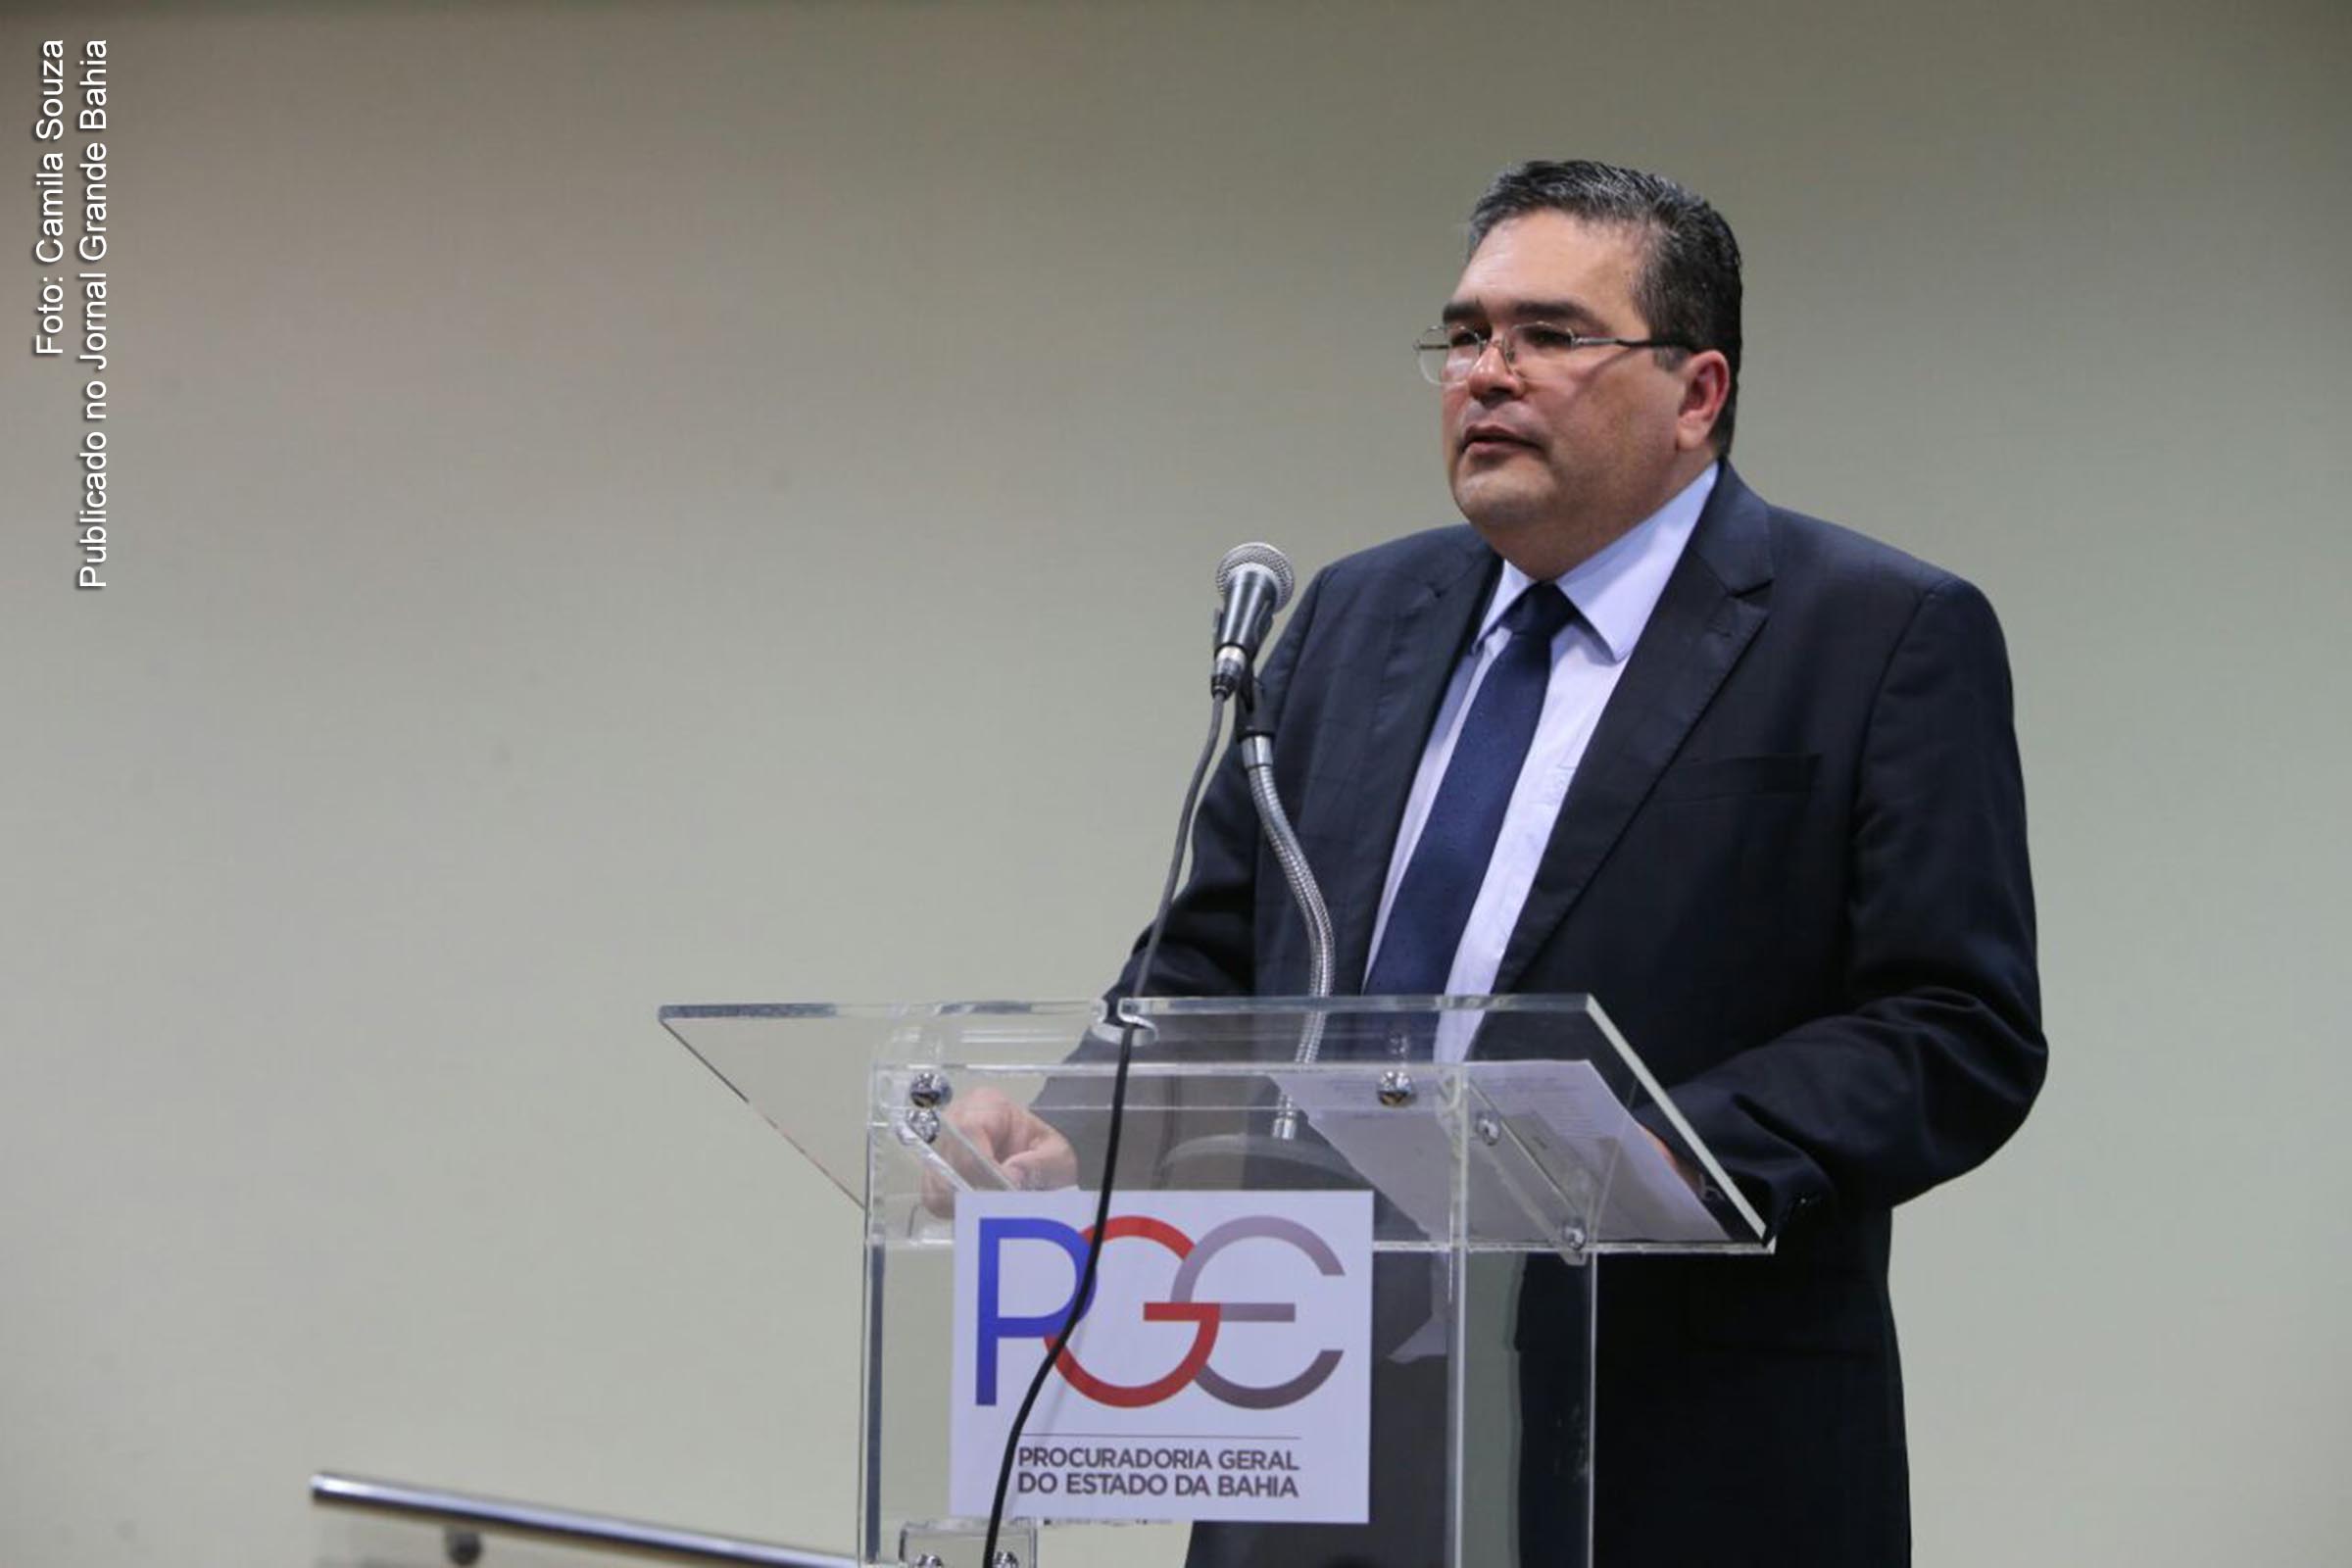 Procurador-geral Paulo Moreno solicita ao STF autorização para suspensão de pagamentos do Estado do Bahia.